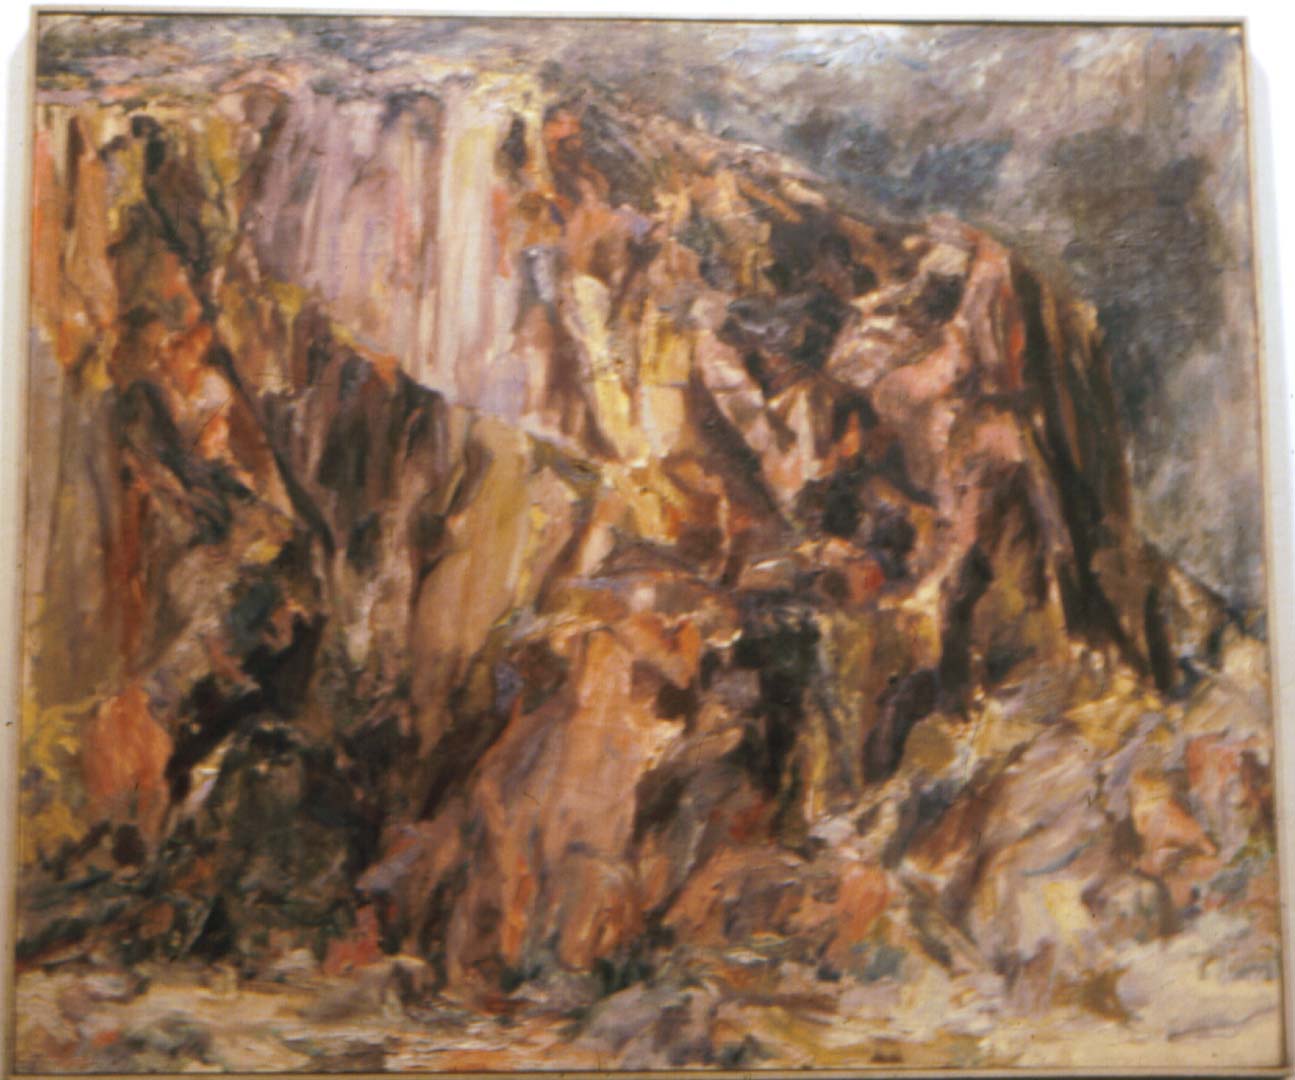 1956 Butte Landscape Oil on Canvas 36 x 44